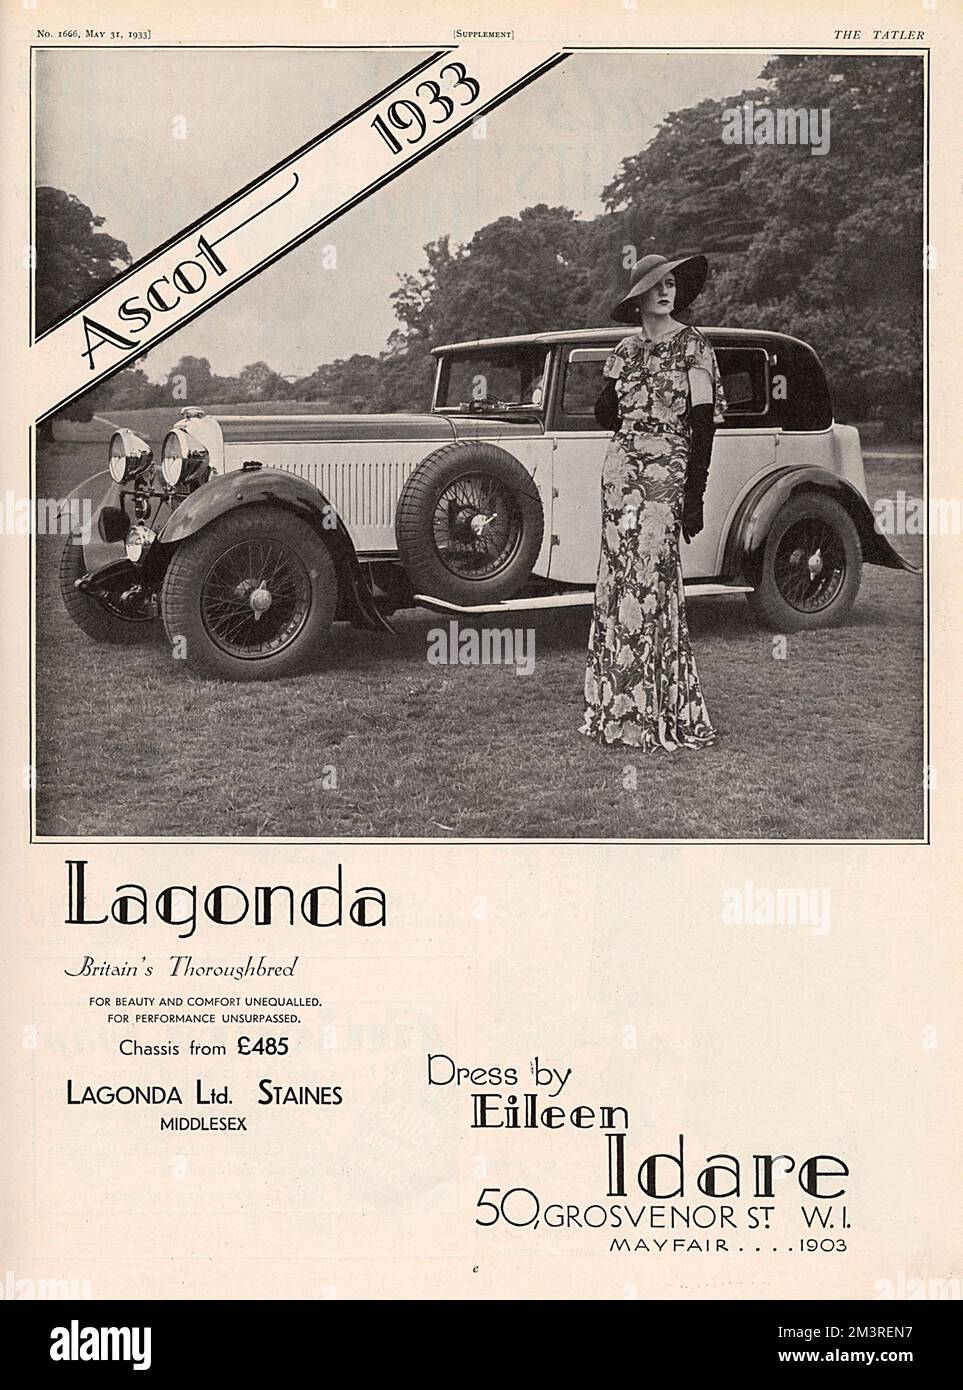 Werbung für Lagonda-Autos, „Britain's Thoroughbred“ - das ideale Transportmittel für Ascot 1933, während das Blumenkleid von Eileen Idare aus der Grosvenor Street 50 ist. Datum: 1933 Stockfoto